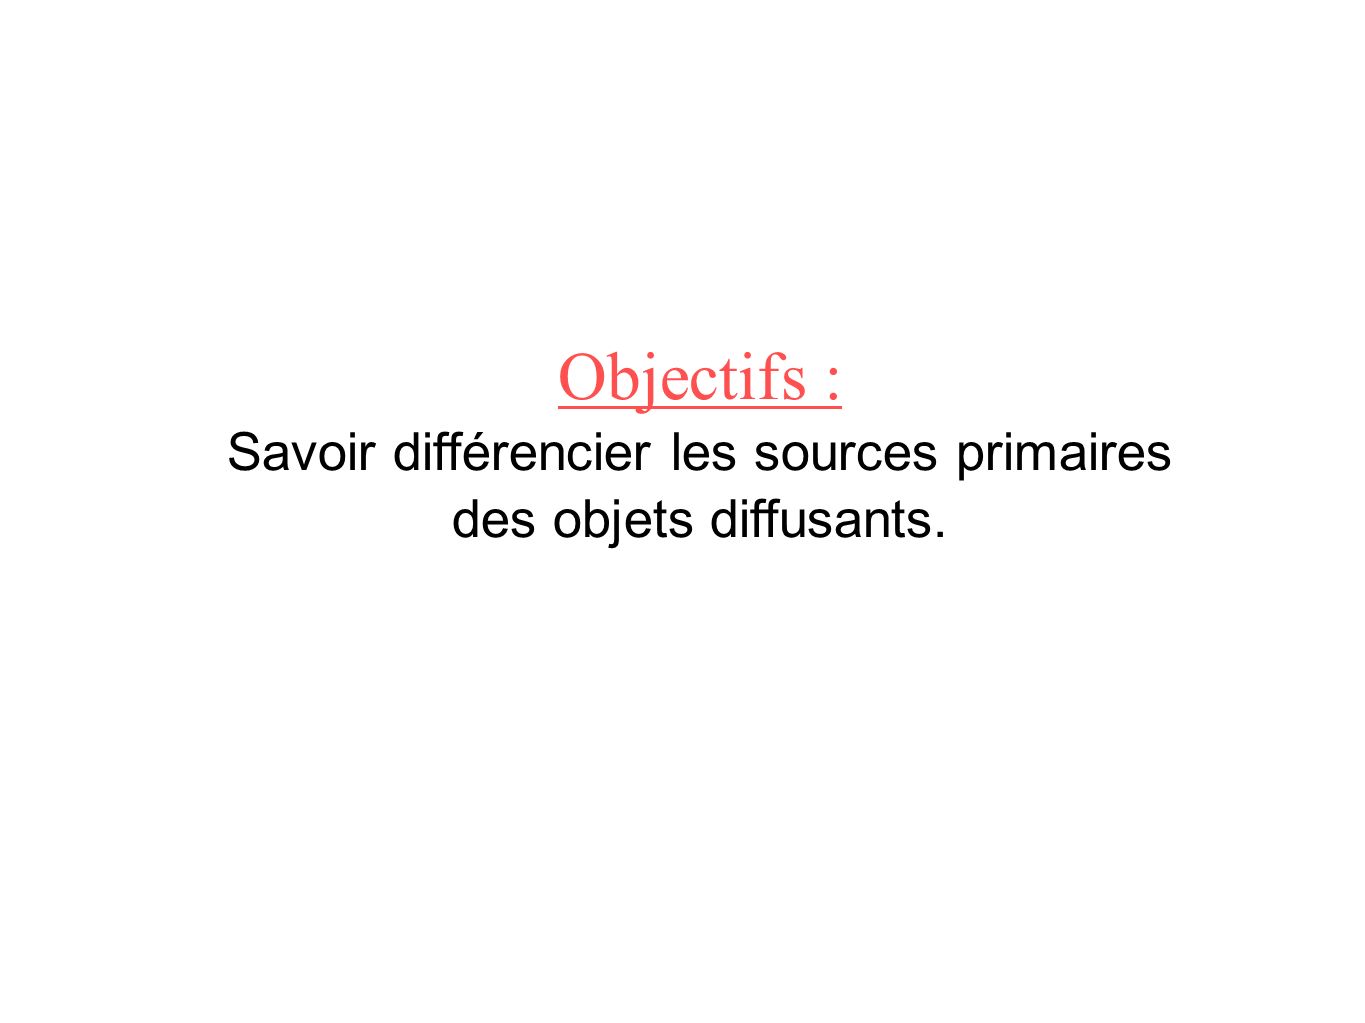 Objectifs : Savoir différencier les sources primaires des objets diffusants.